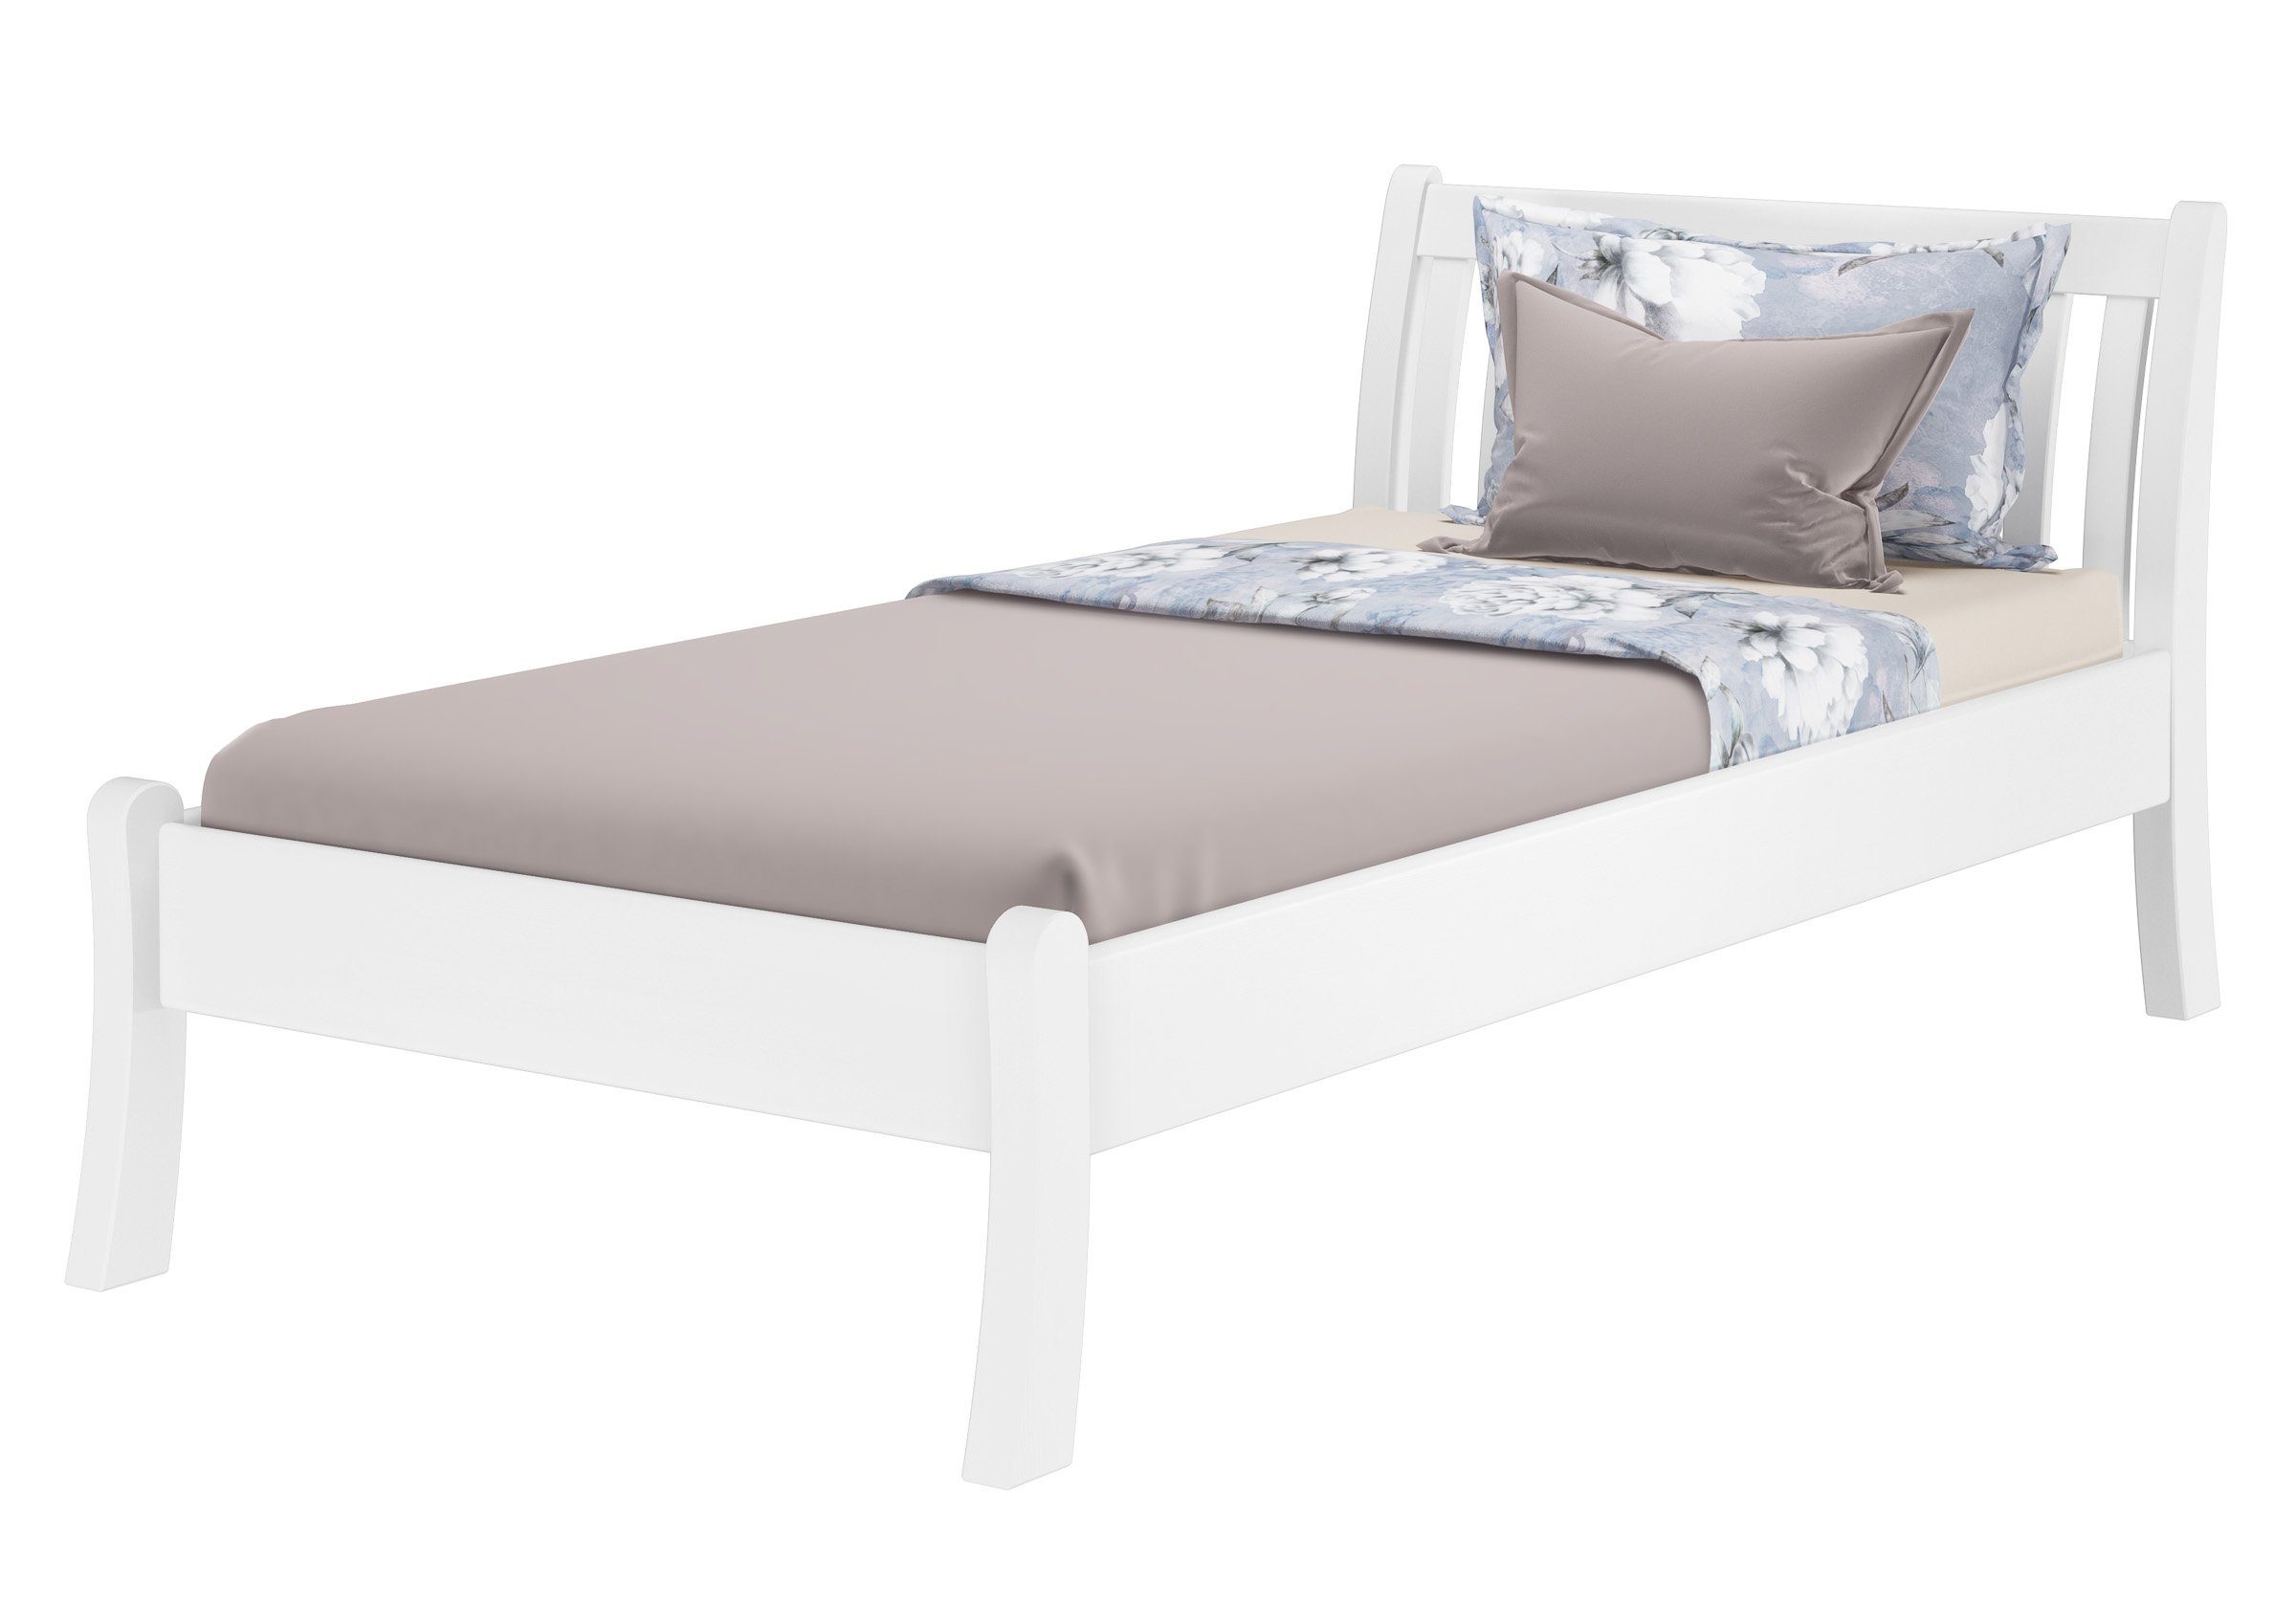 ERST-HOLZ Bett Einzelbett hohe Sitzkante Kiefer weiß 100x200 cm, Kieferwaschweiß | Bettgestelle